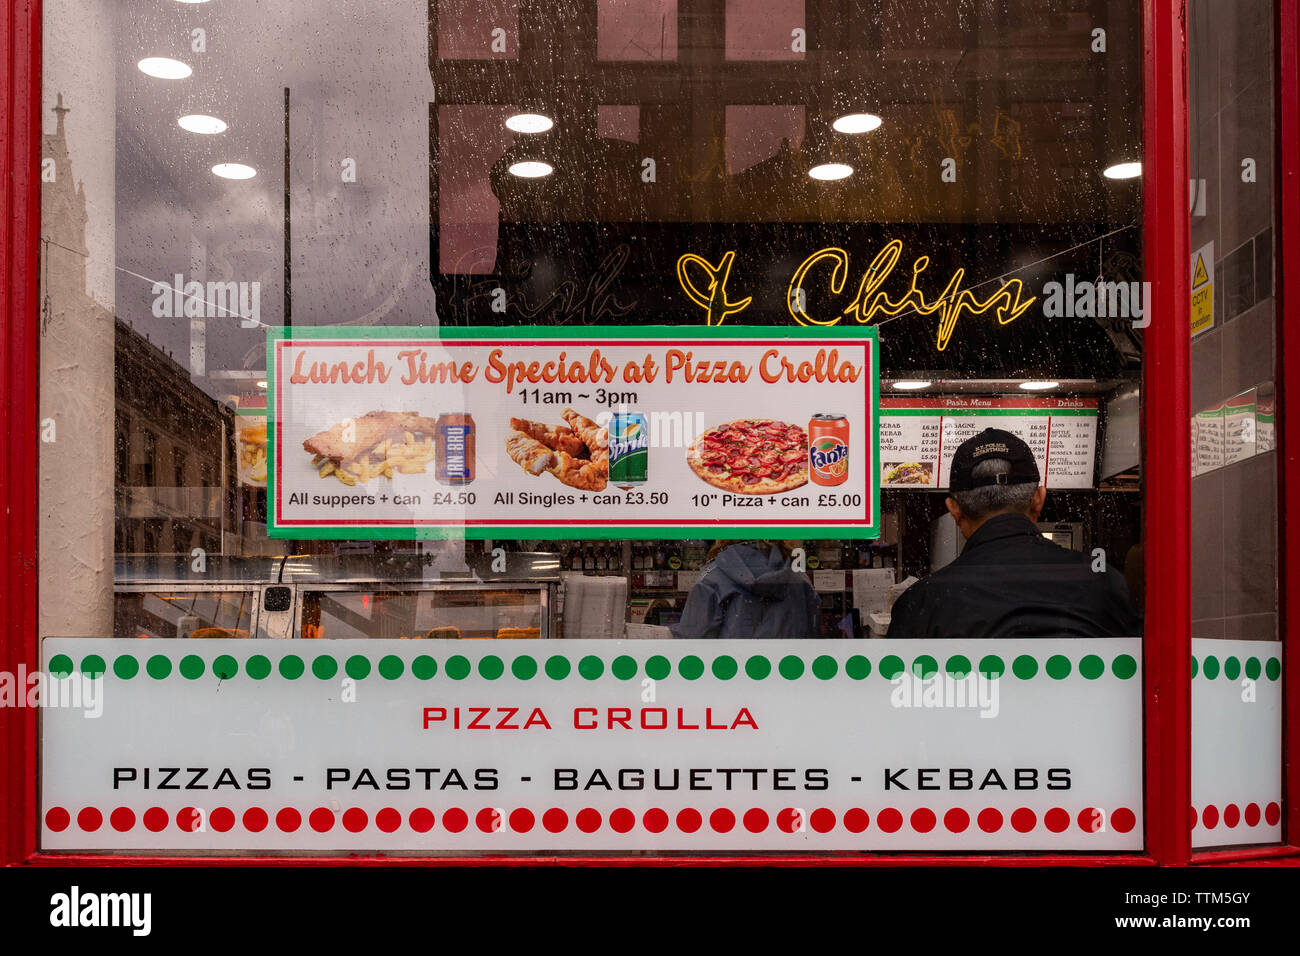 Ofertas a la hora de comer pizza Crolla fast food de Glasgow, Escocia, Reino Unido Foto de stock